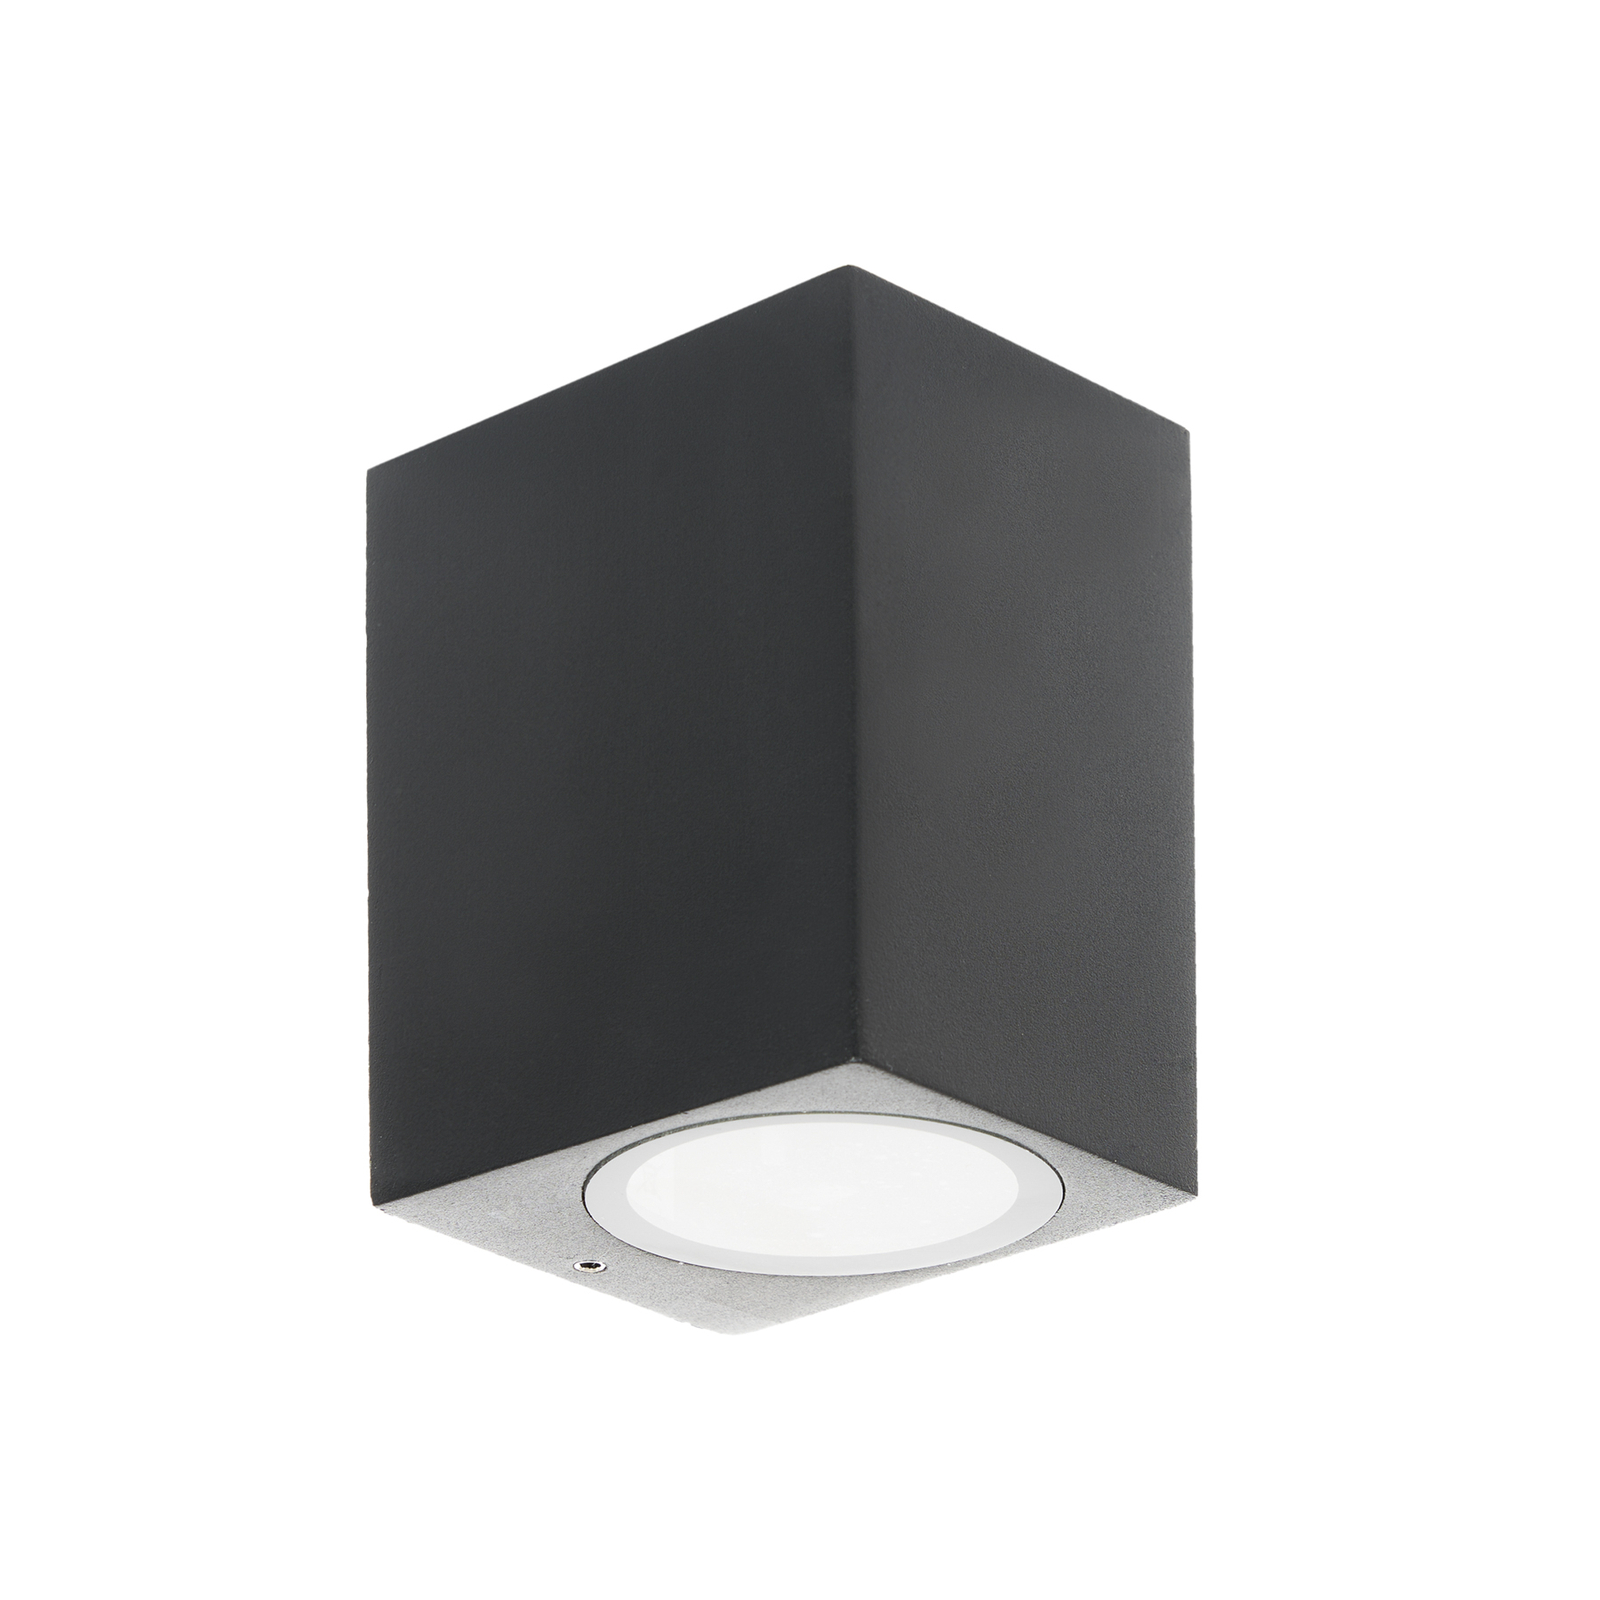 Prios kültéri fali lámpa Tetje, fekete, szögletes, 10 cm-es, szögletes